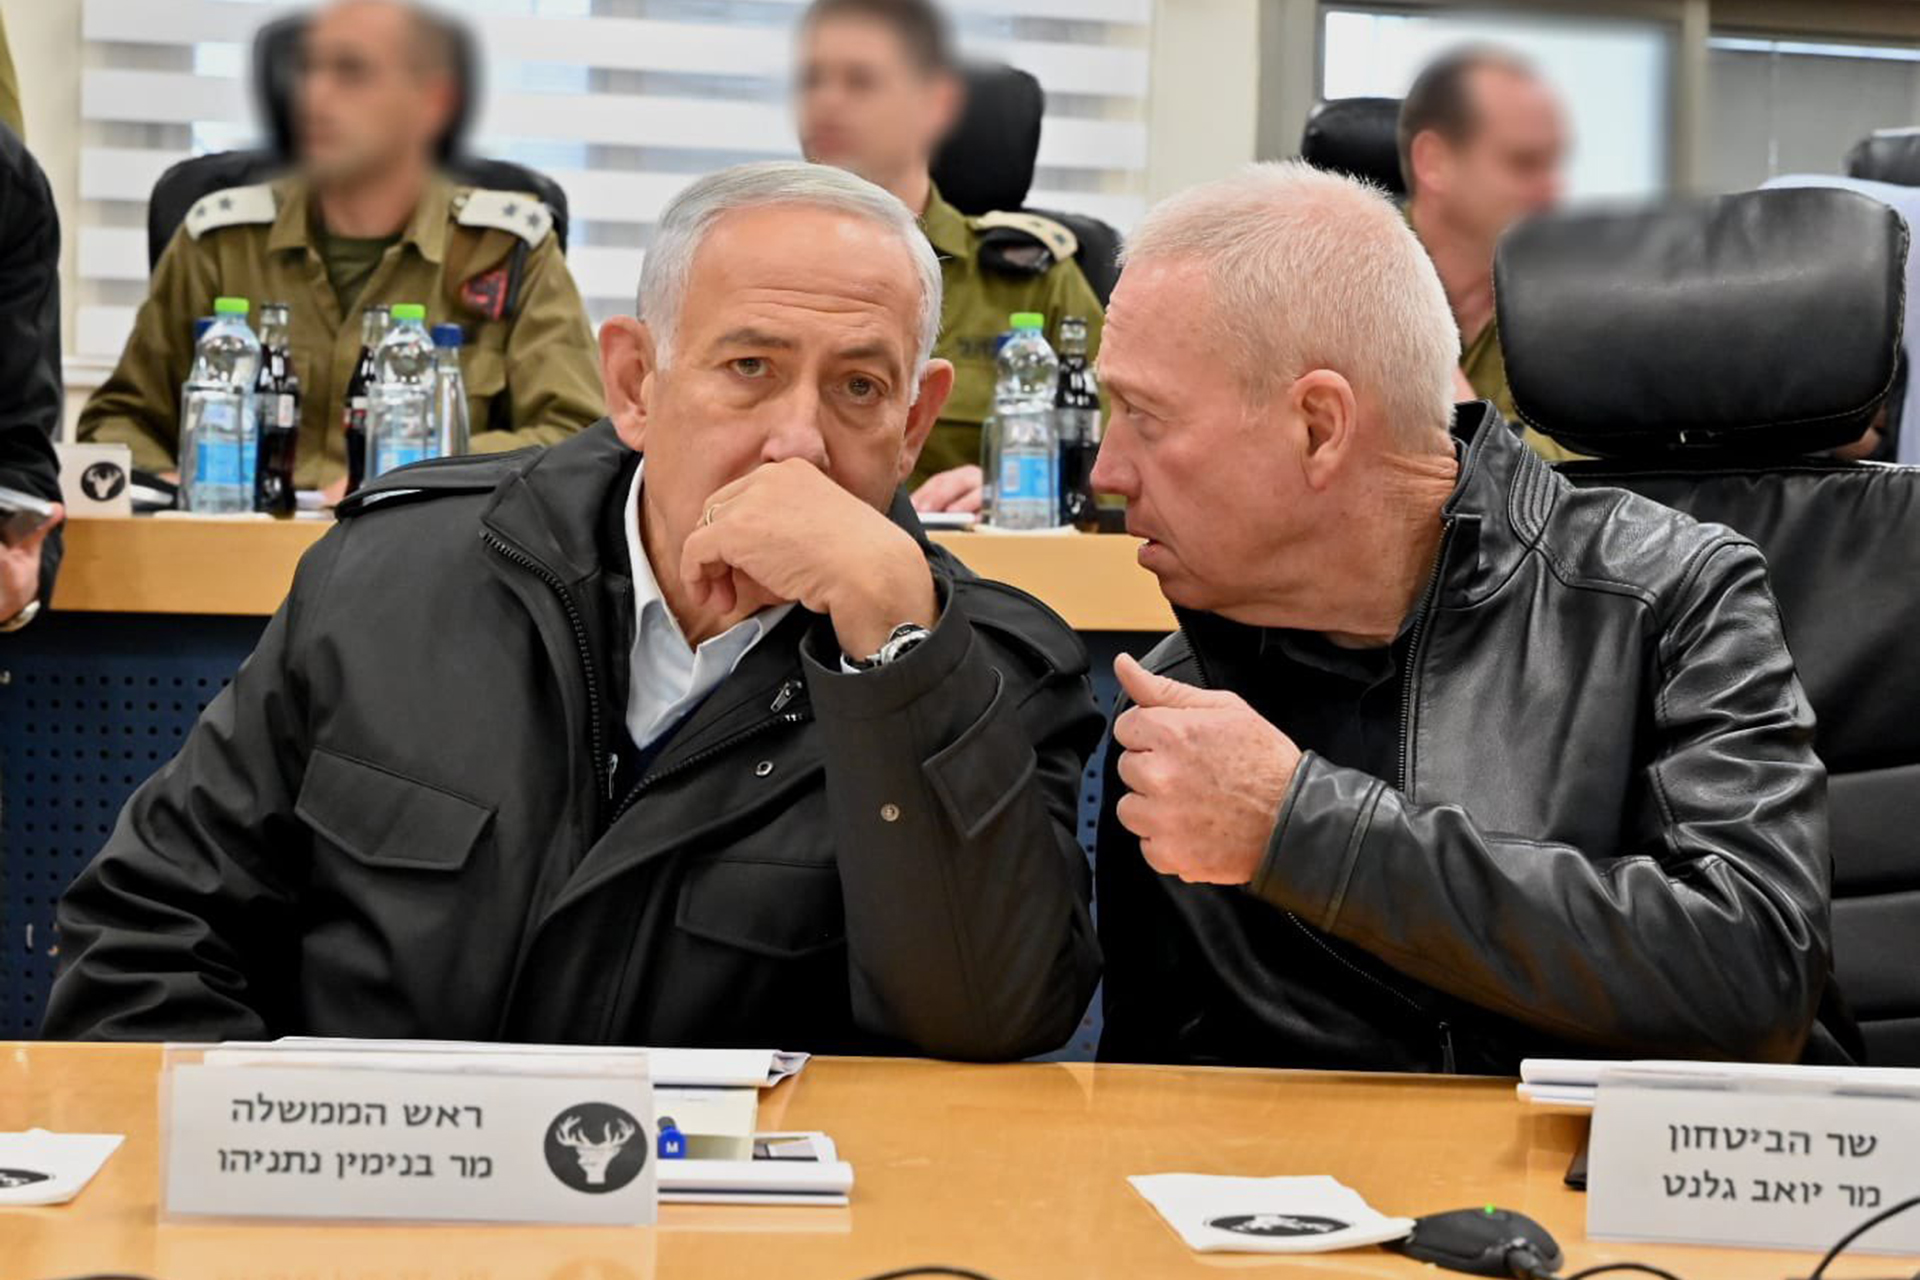 إسرائيل ترد على طلب الجنائية الدولية اعتقال نتنياهو وغالانت | أخبار – البوكس نيوز